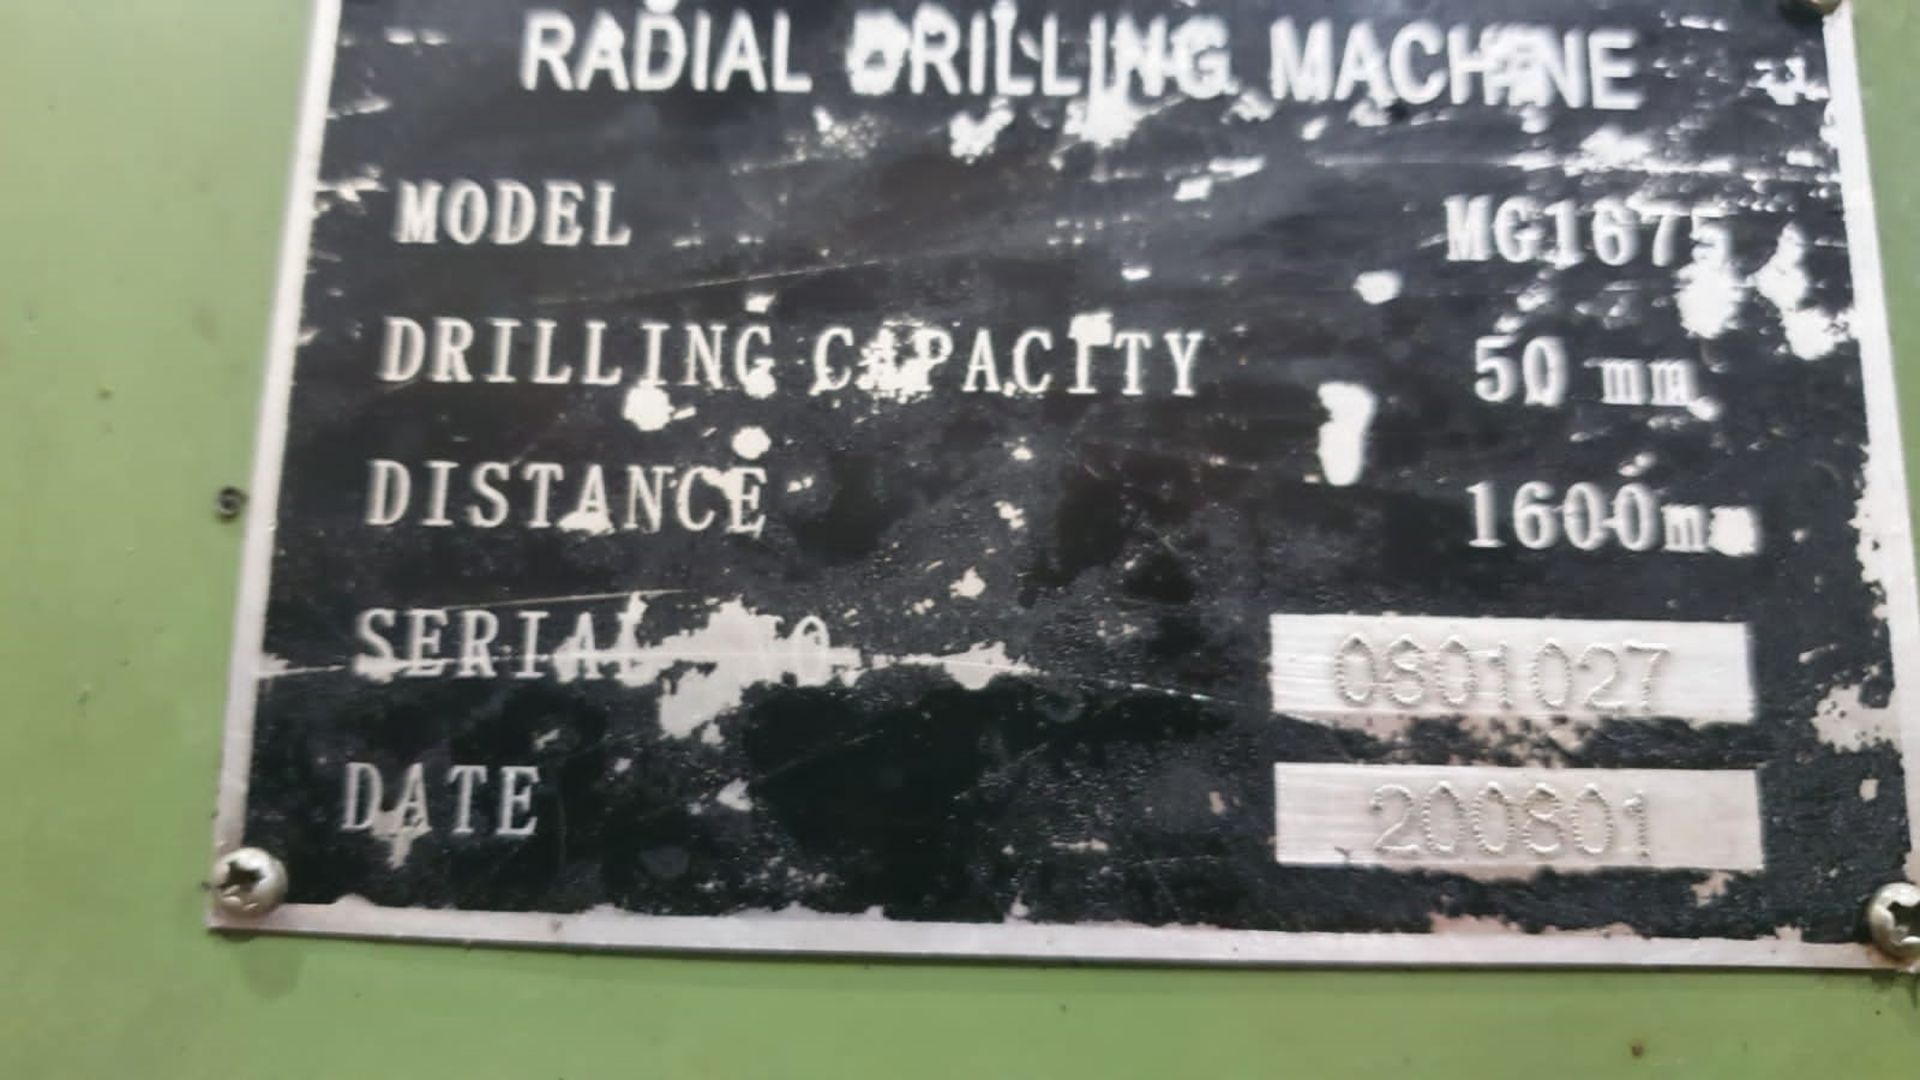 BEMA MG1675 (5') Radial Drill - Image 6 of 6